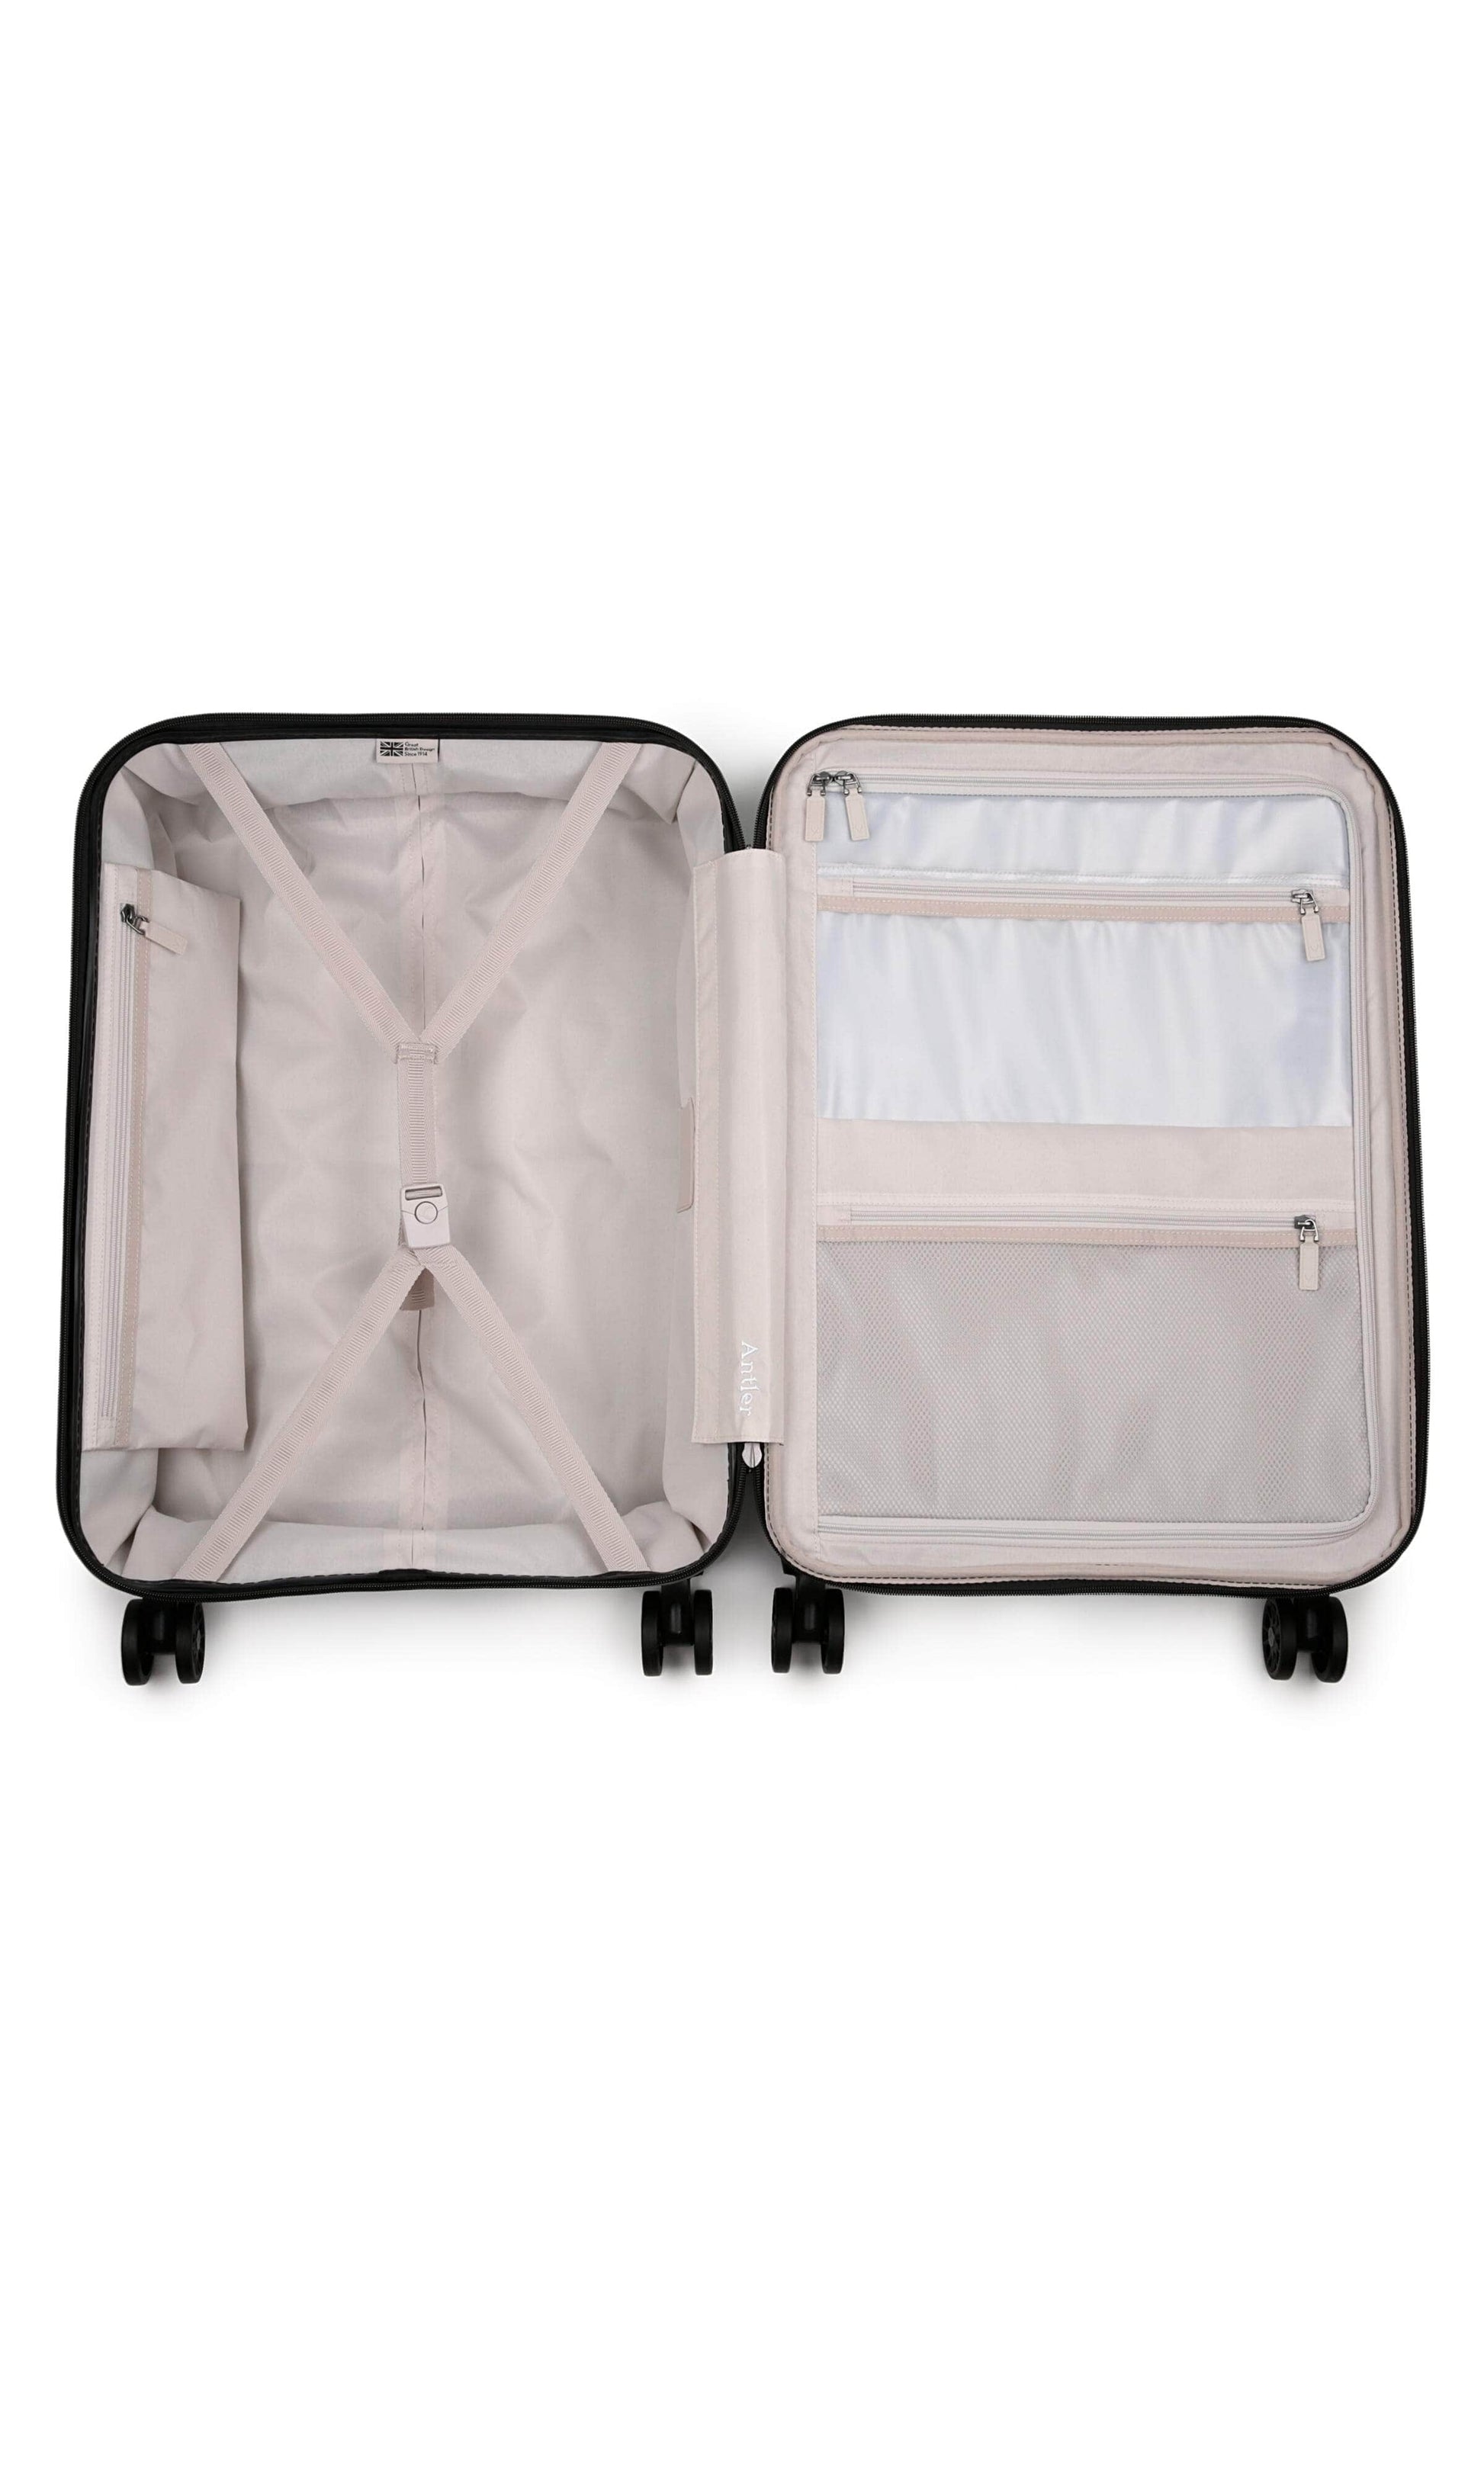 Antler Luggage -  Clifton set in blush - Hard Suitcases Clifton Set of 3 Suitcases Blush | Hard Suitcase | Antler UK